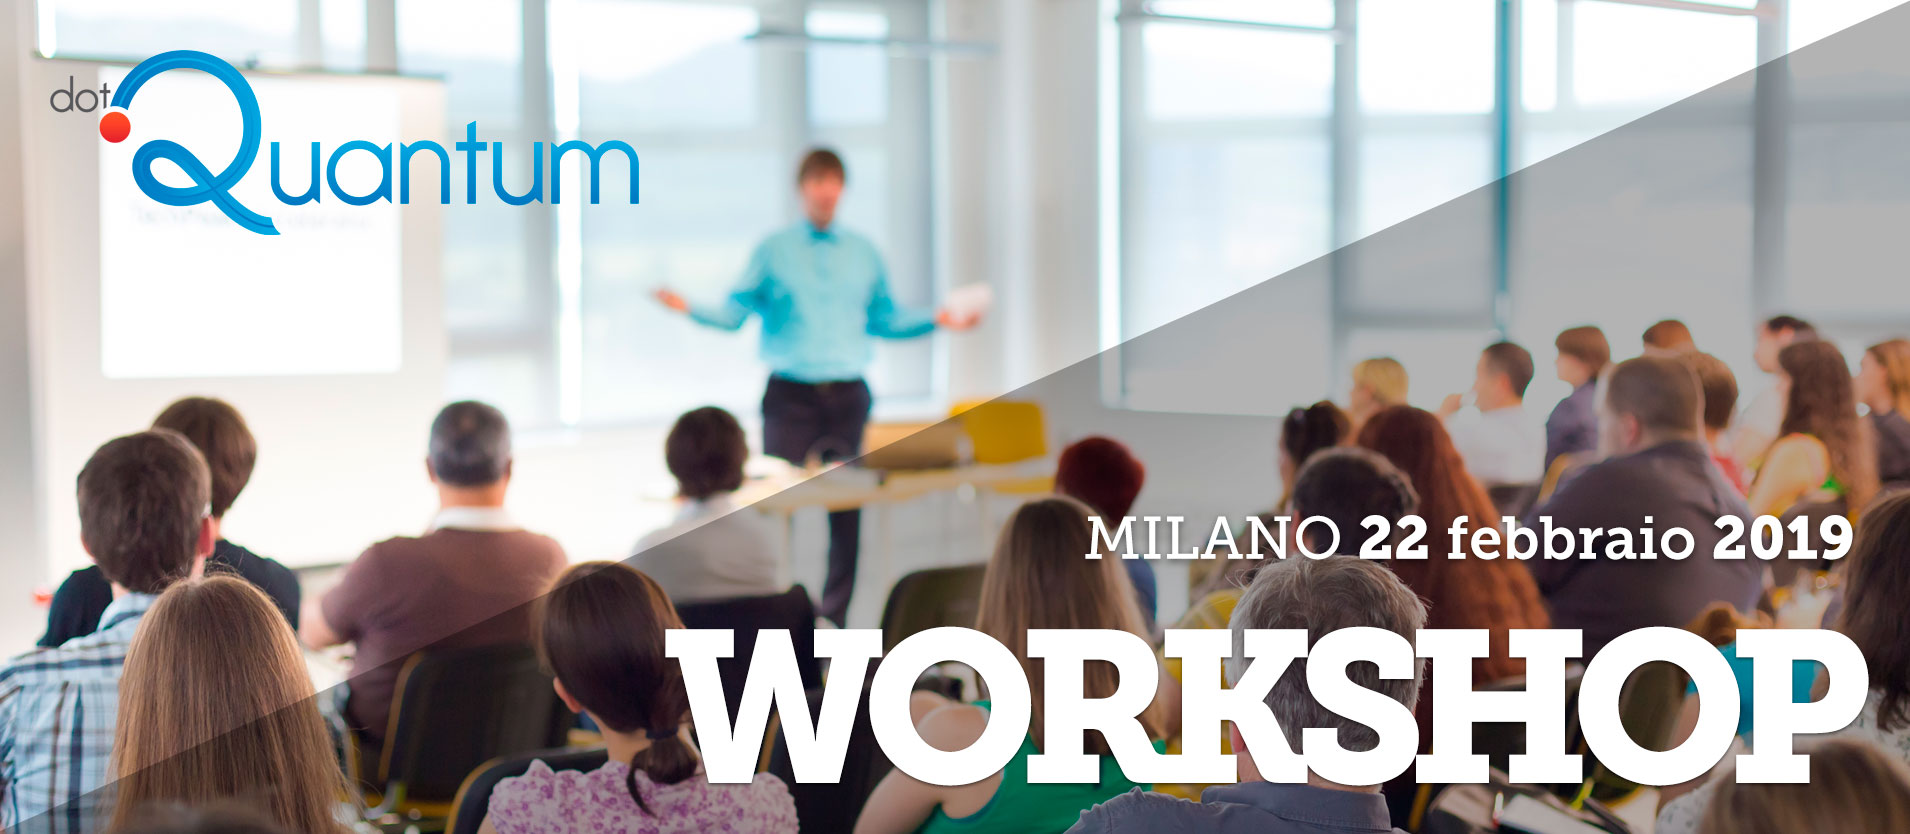 dotQuantum.io Workshop @Milano